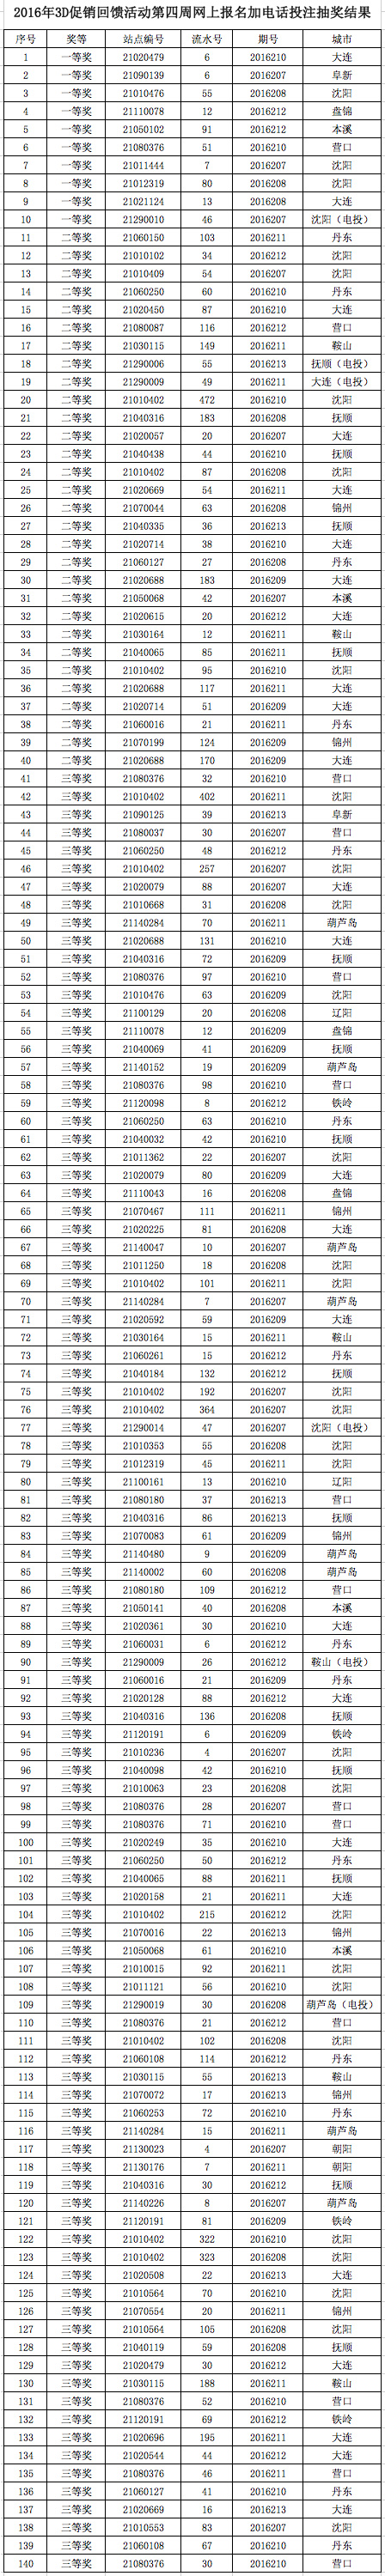 2016年辽宁福彩3d促销回馈活动第四周抽奖结果名单